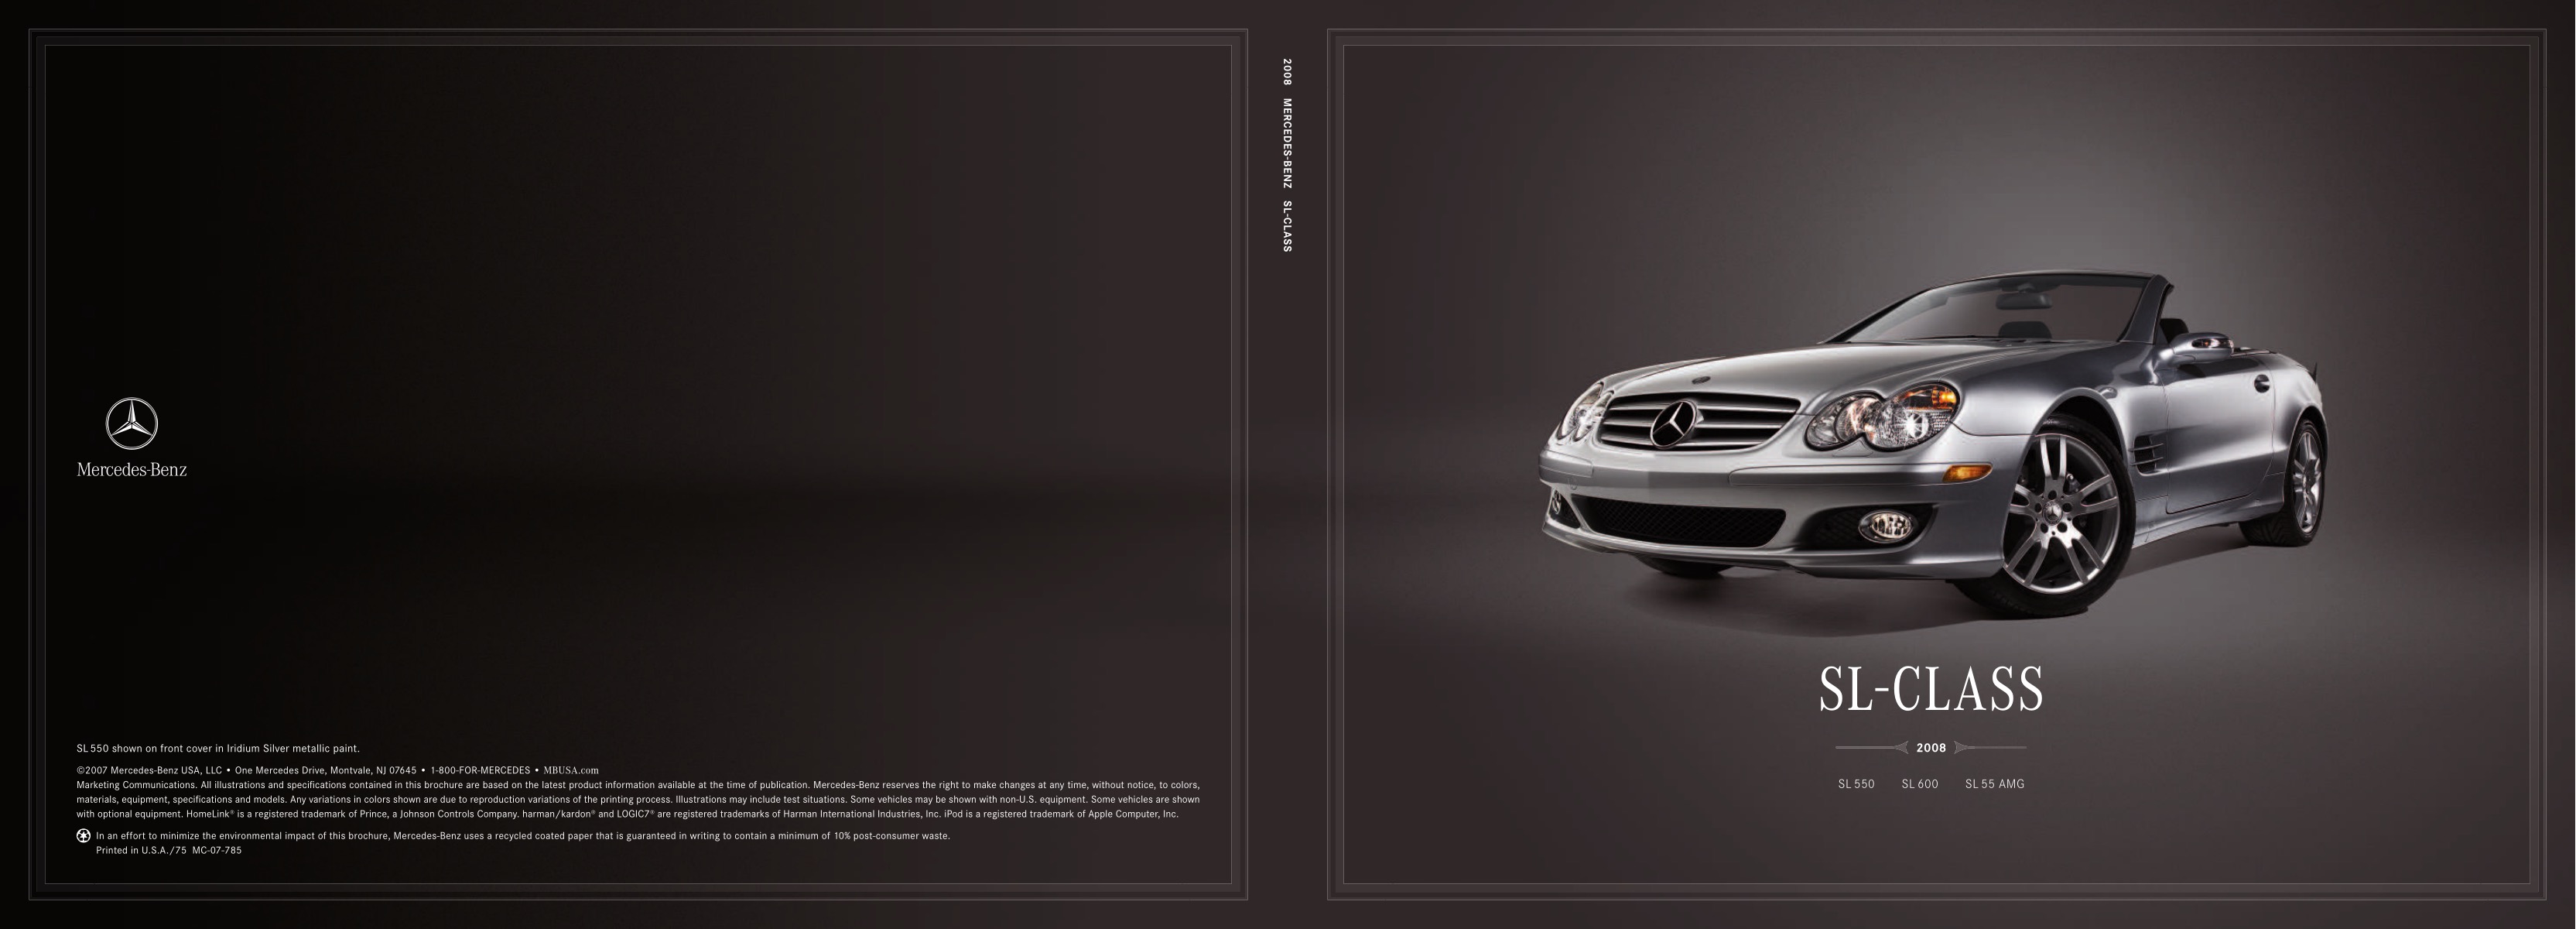 2008 Mercedes-Benz SL Brochure